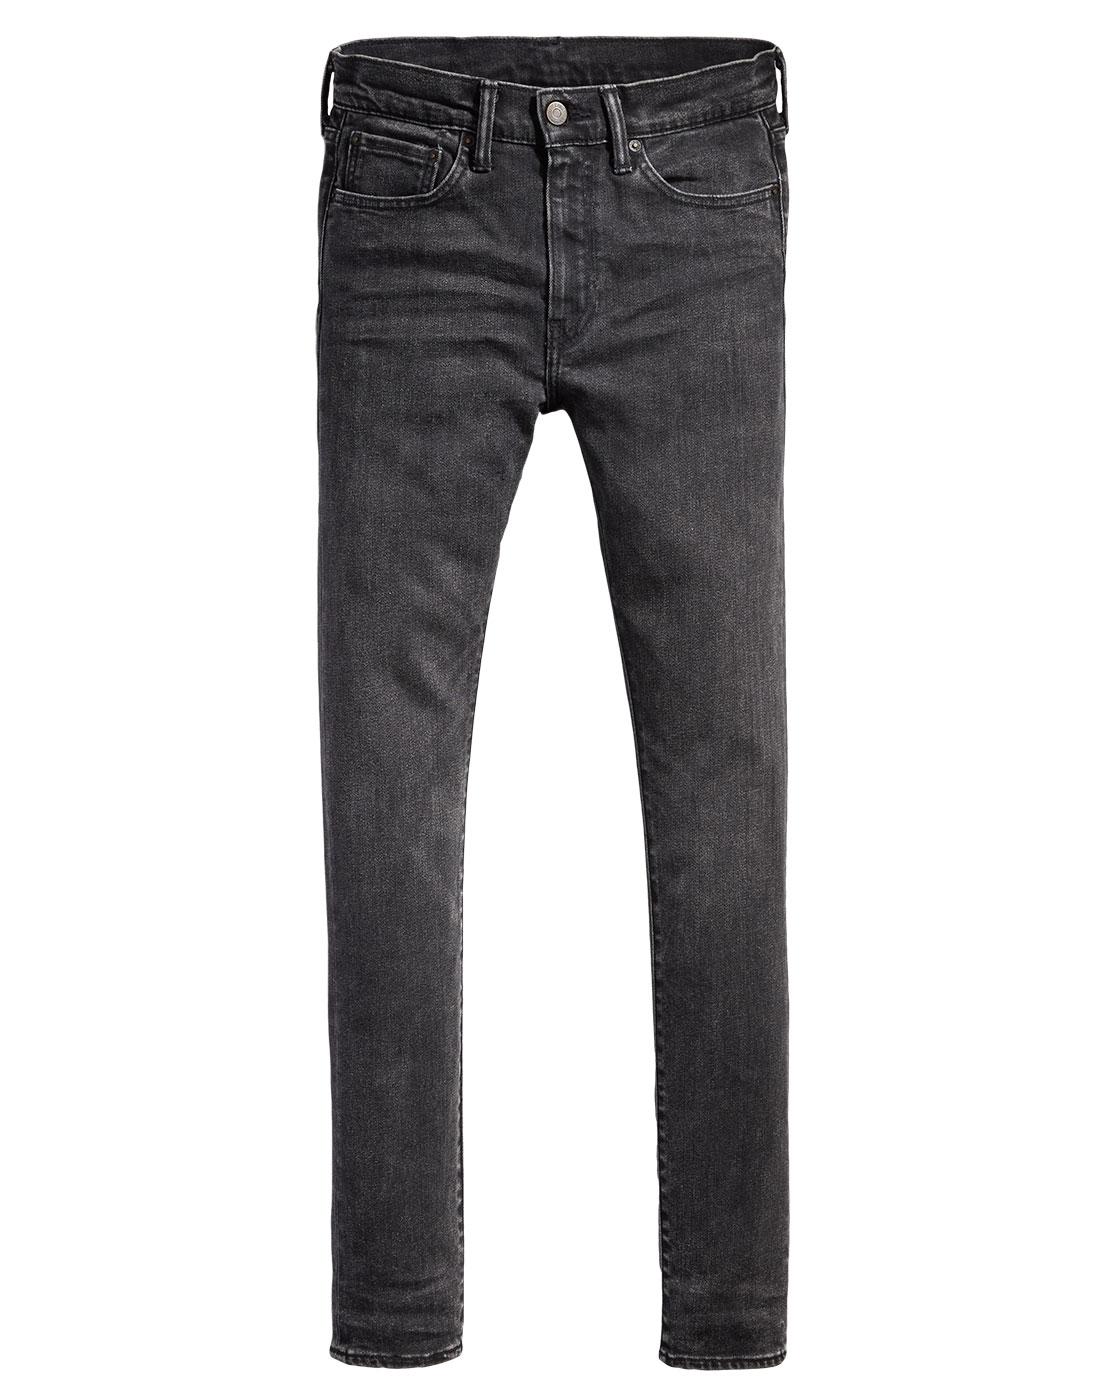 levi 519 black jeans